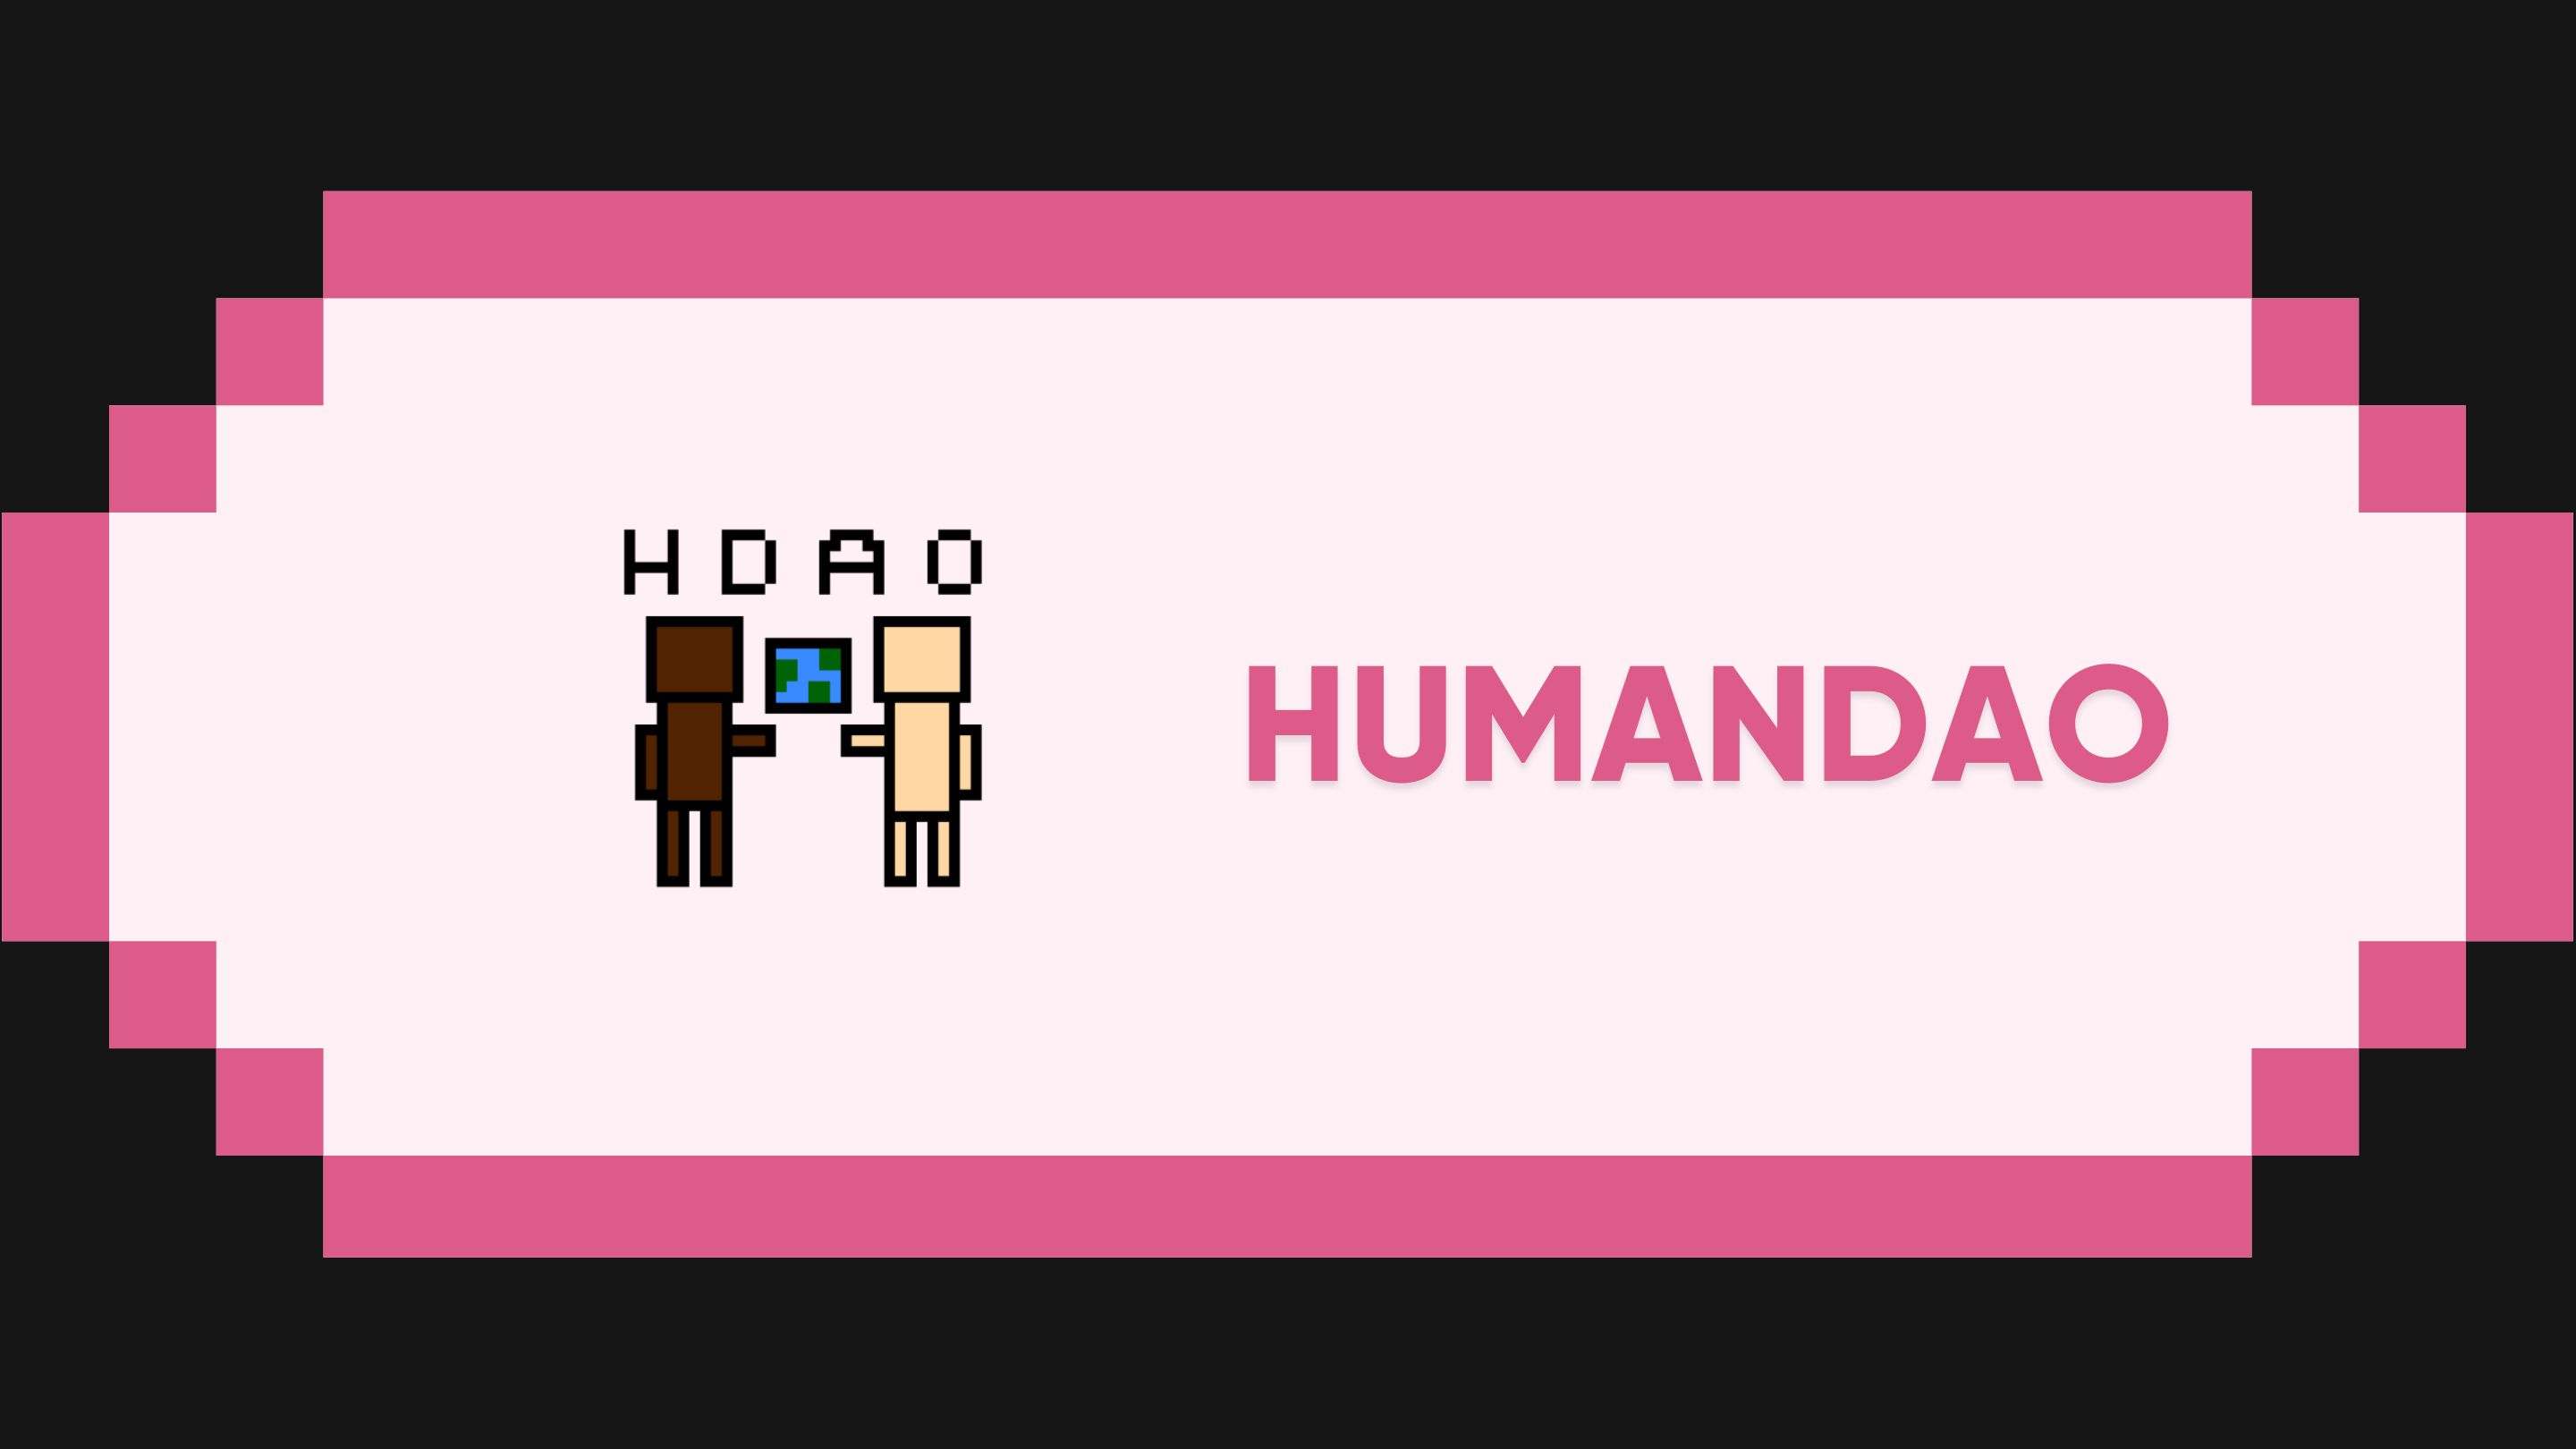 HumanDAO: An Introduction